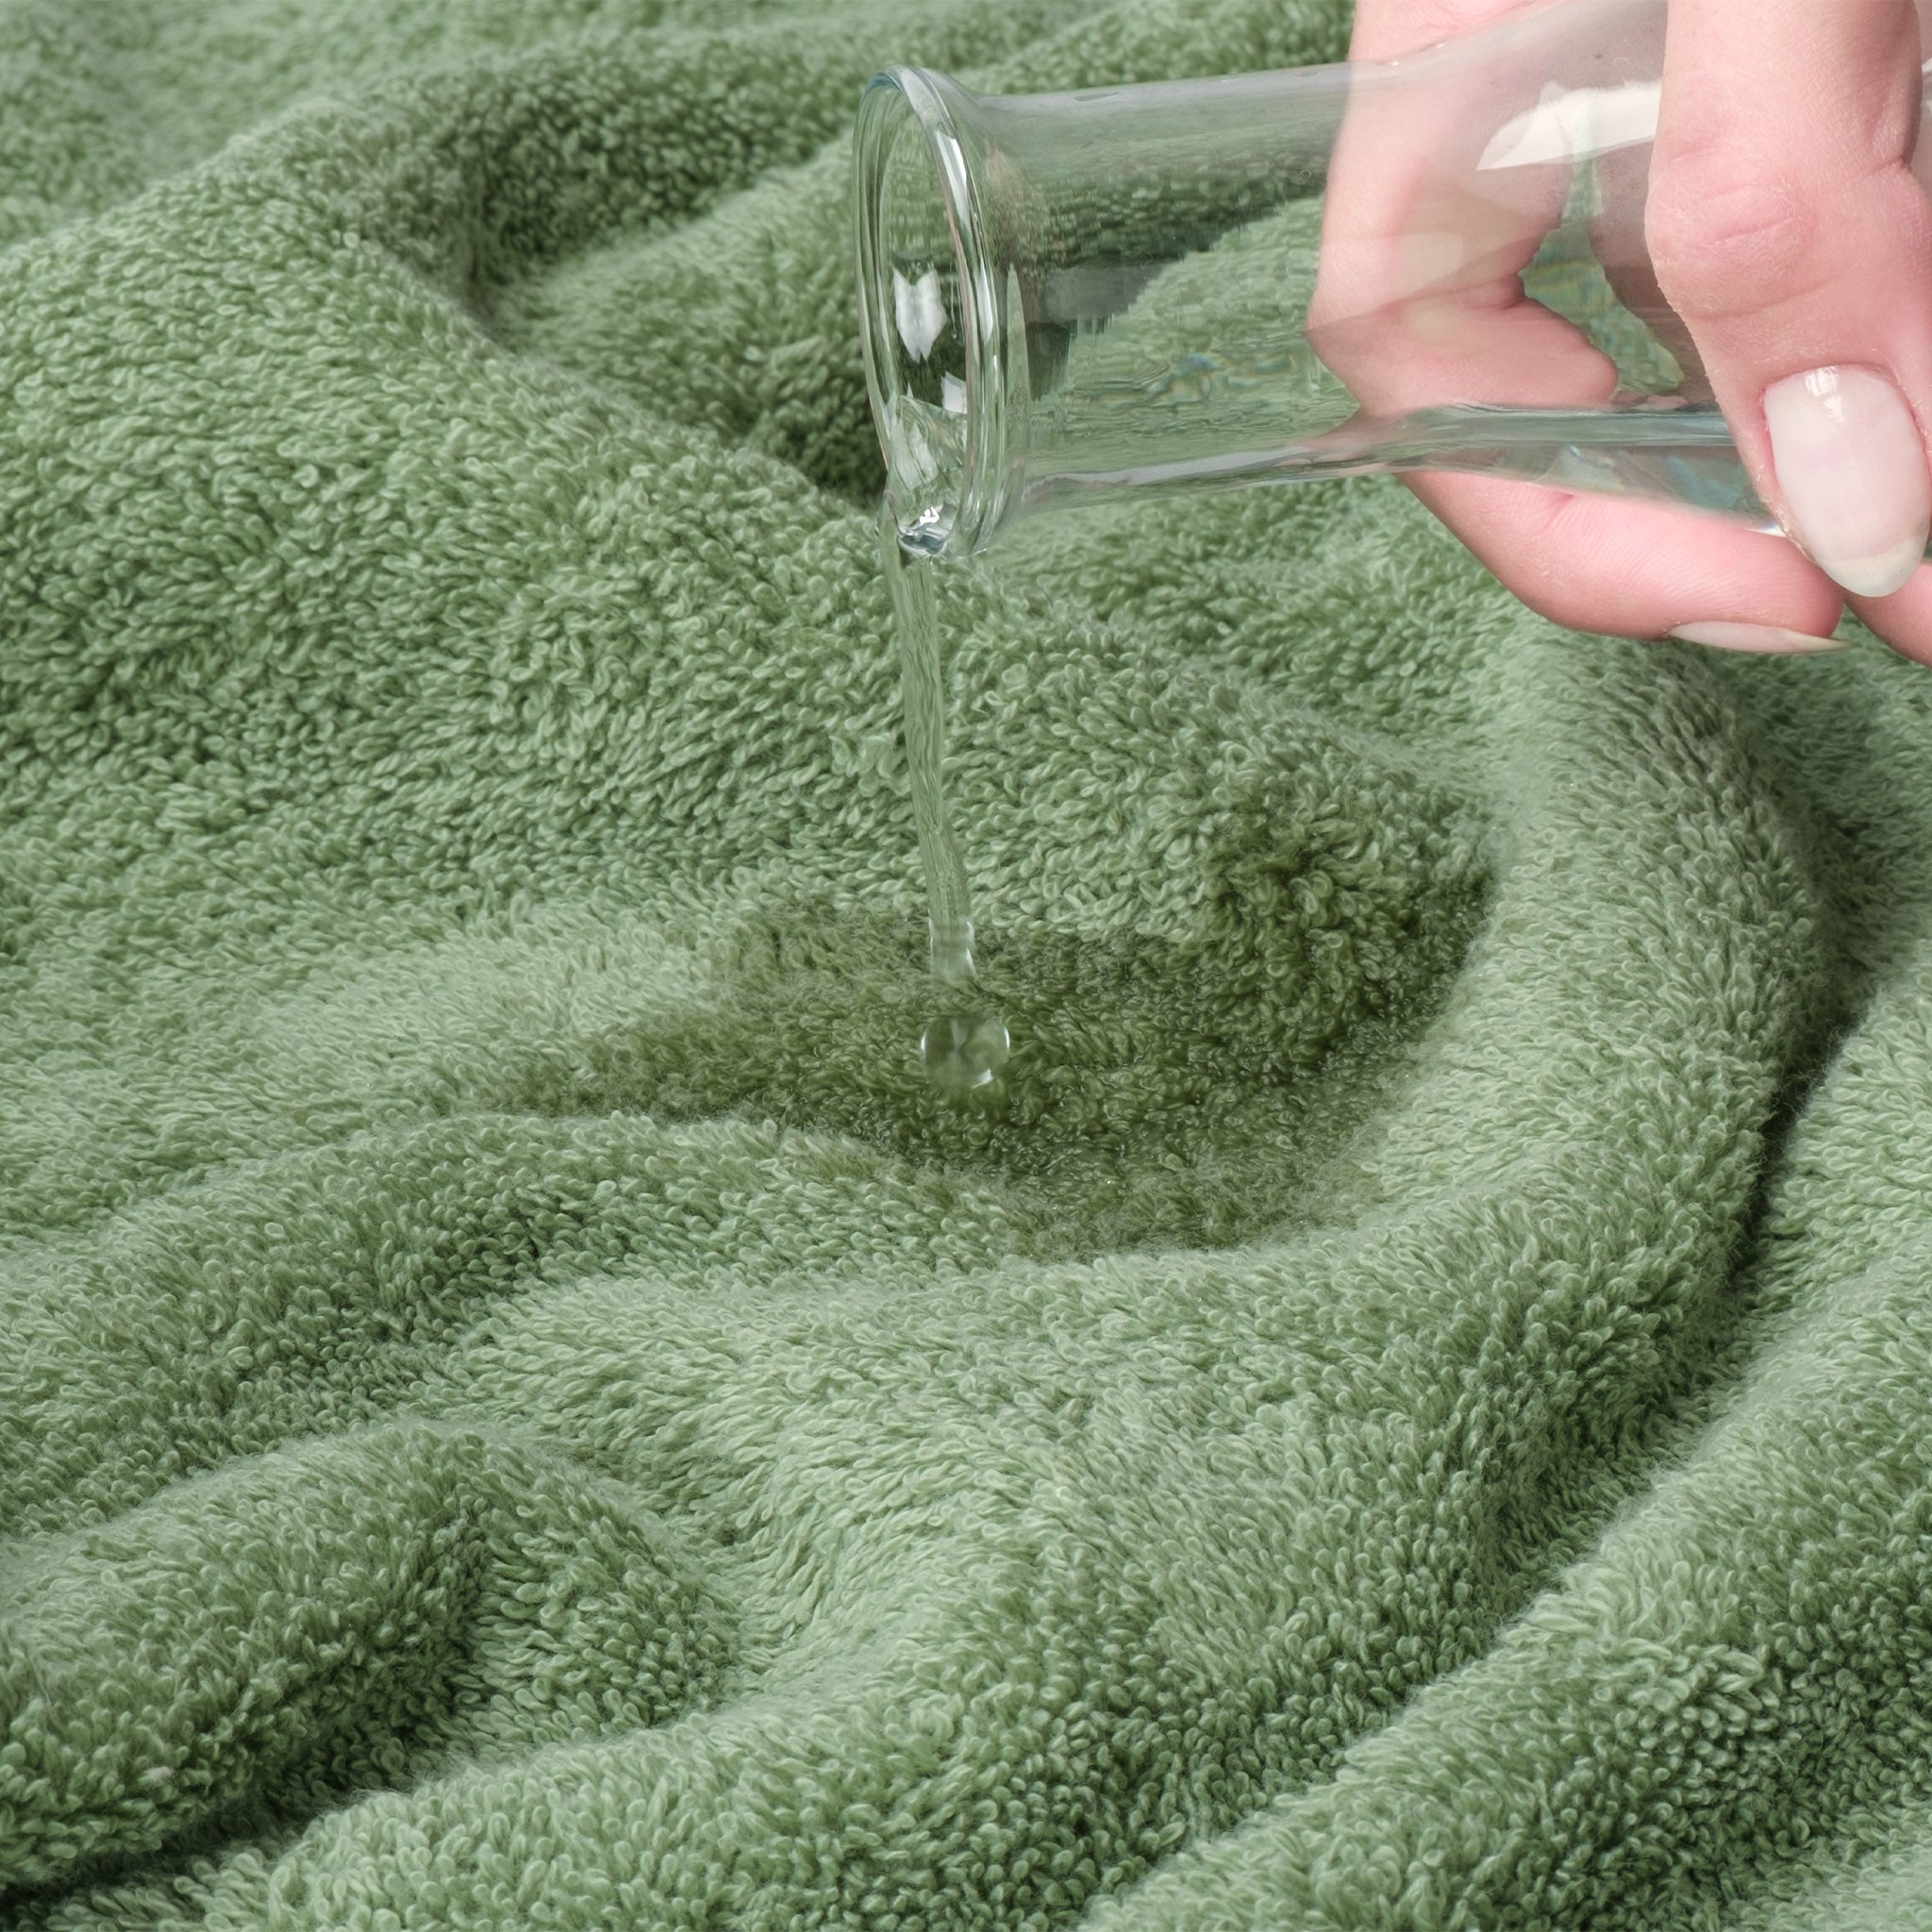 American Soft Linen 100% Turkish Cotton 4 Piece Washcloth Set sage-green-5